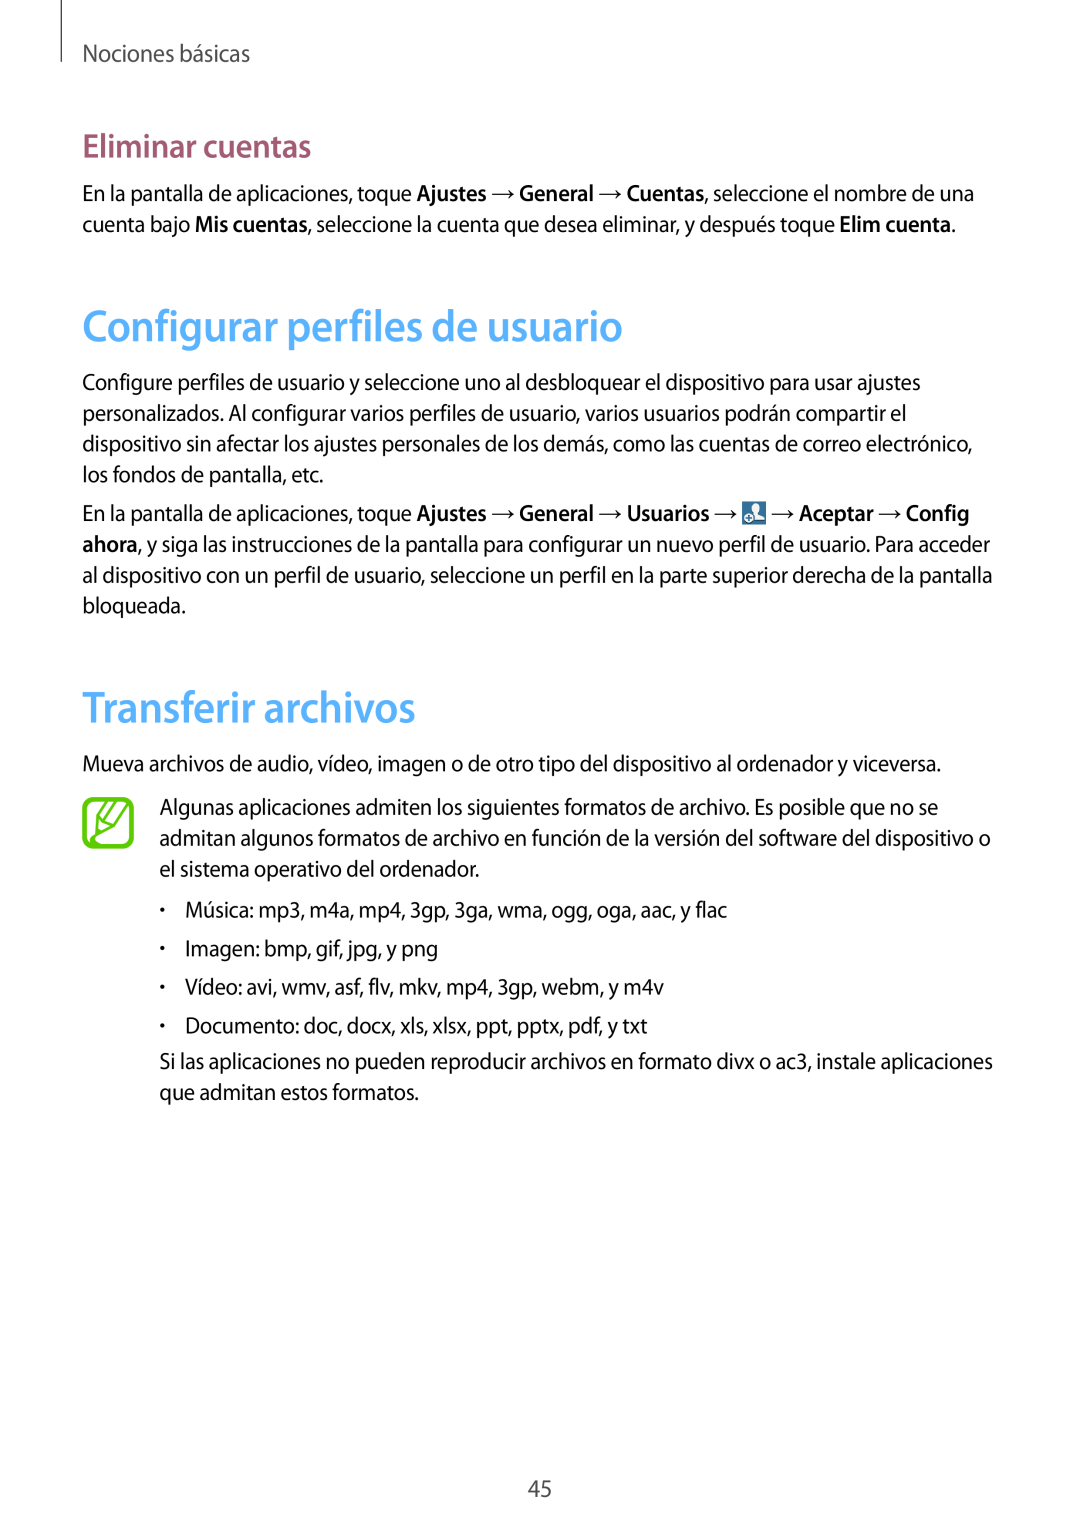 Samsung SM-T320NZKAPHE manual Configurar perfiles de usuario, Transferir archivos, Eliminar cuentas, Nociones básicas 